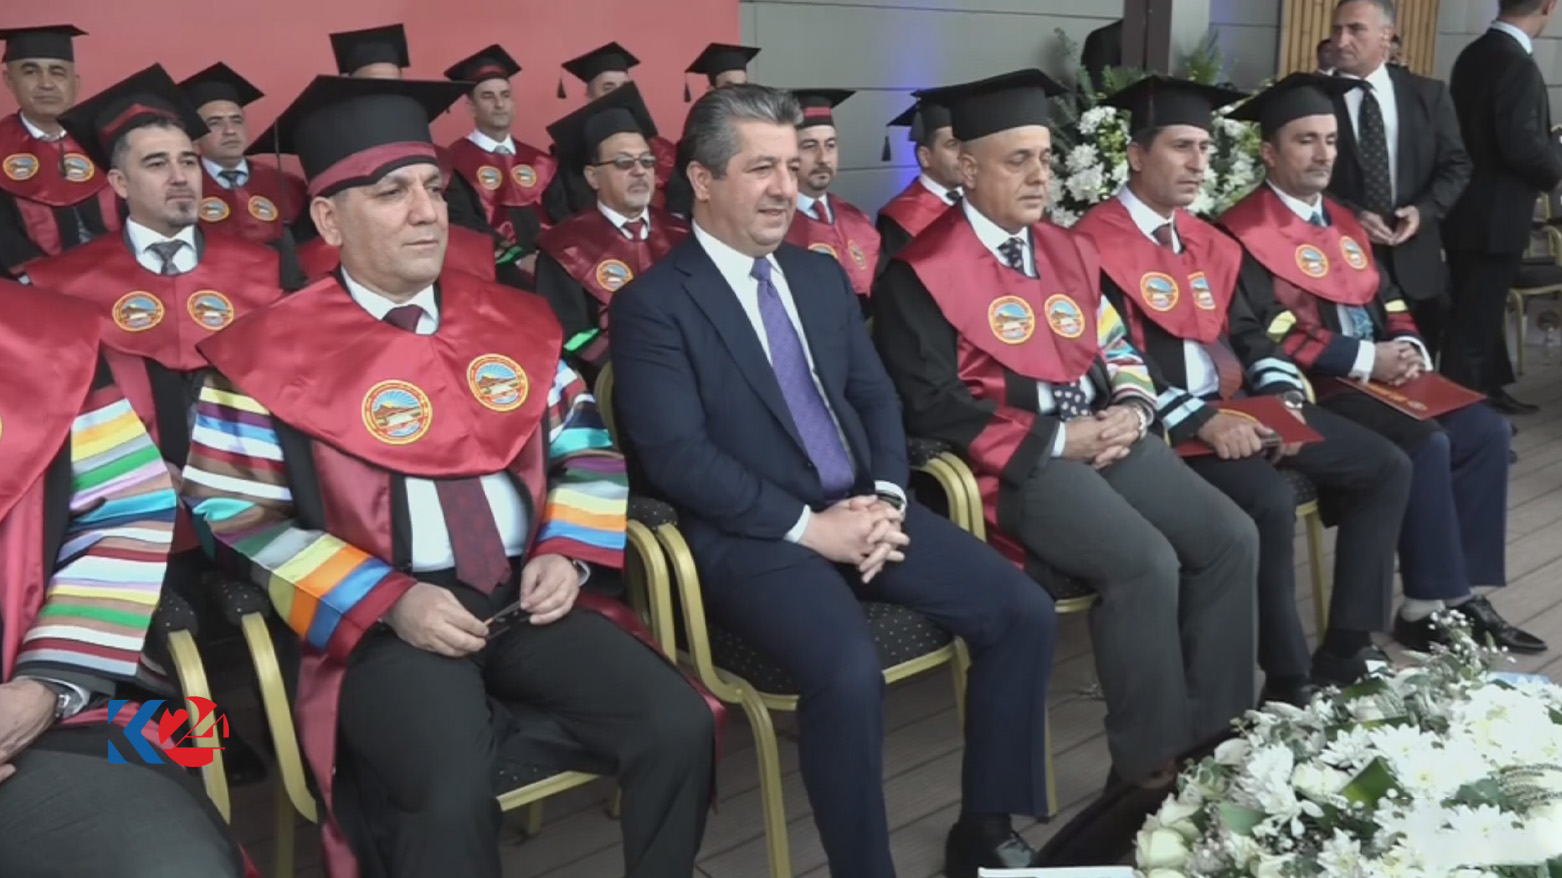 رئيس حكومة إقليم كوردستان في مراسم حفل تخرج طلبة جامعة صلاح الدين بأربيل